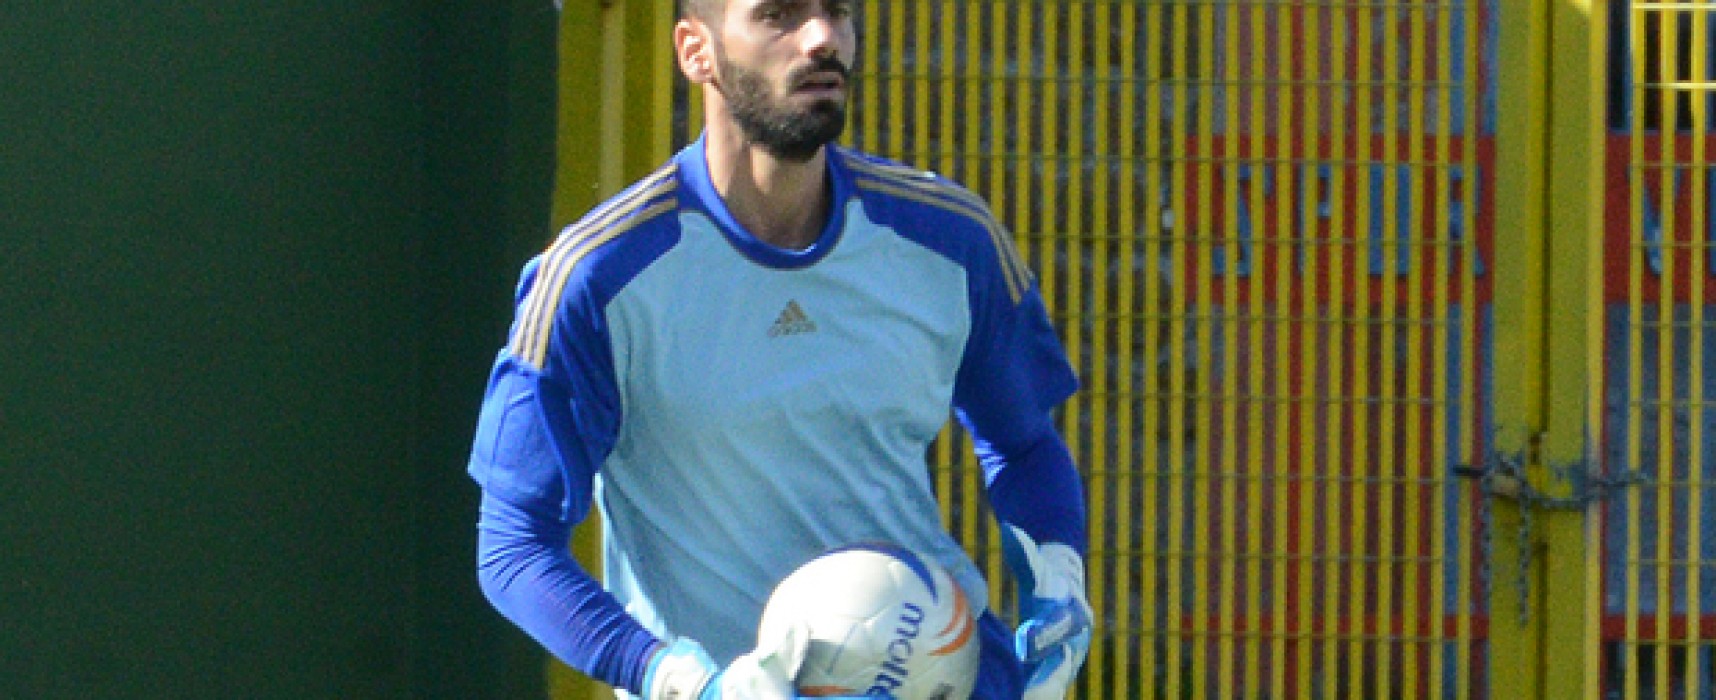 Apruzzese para due rigori e Paolacci firma il gol vittoria a Nuoro.